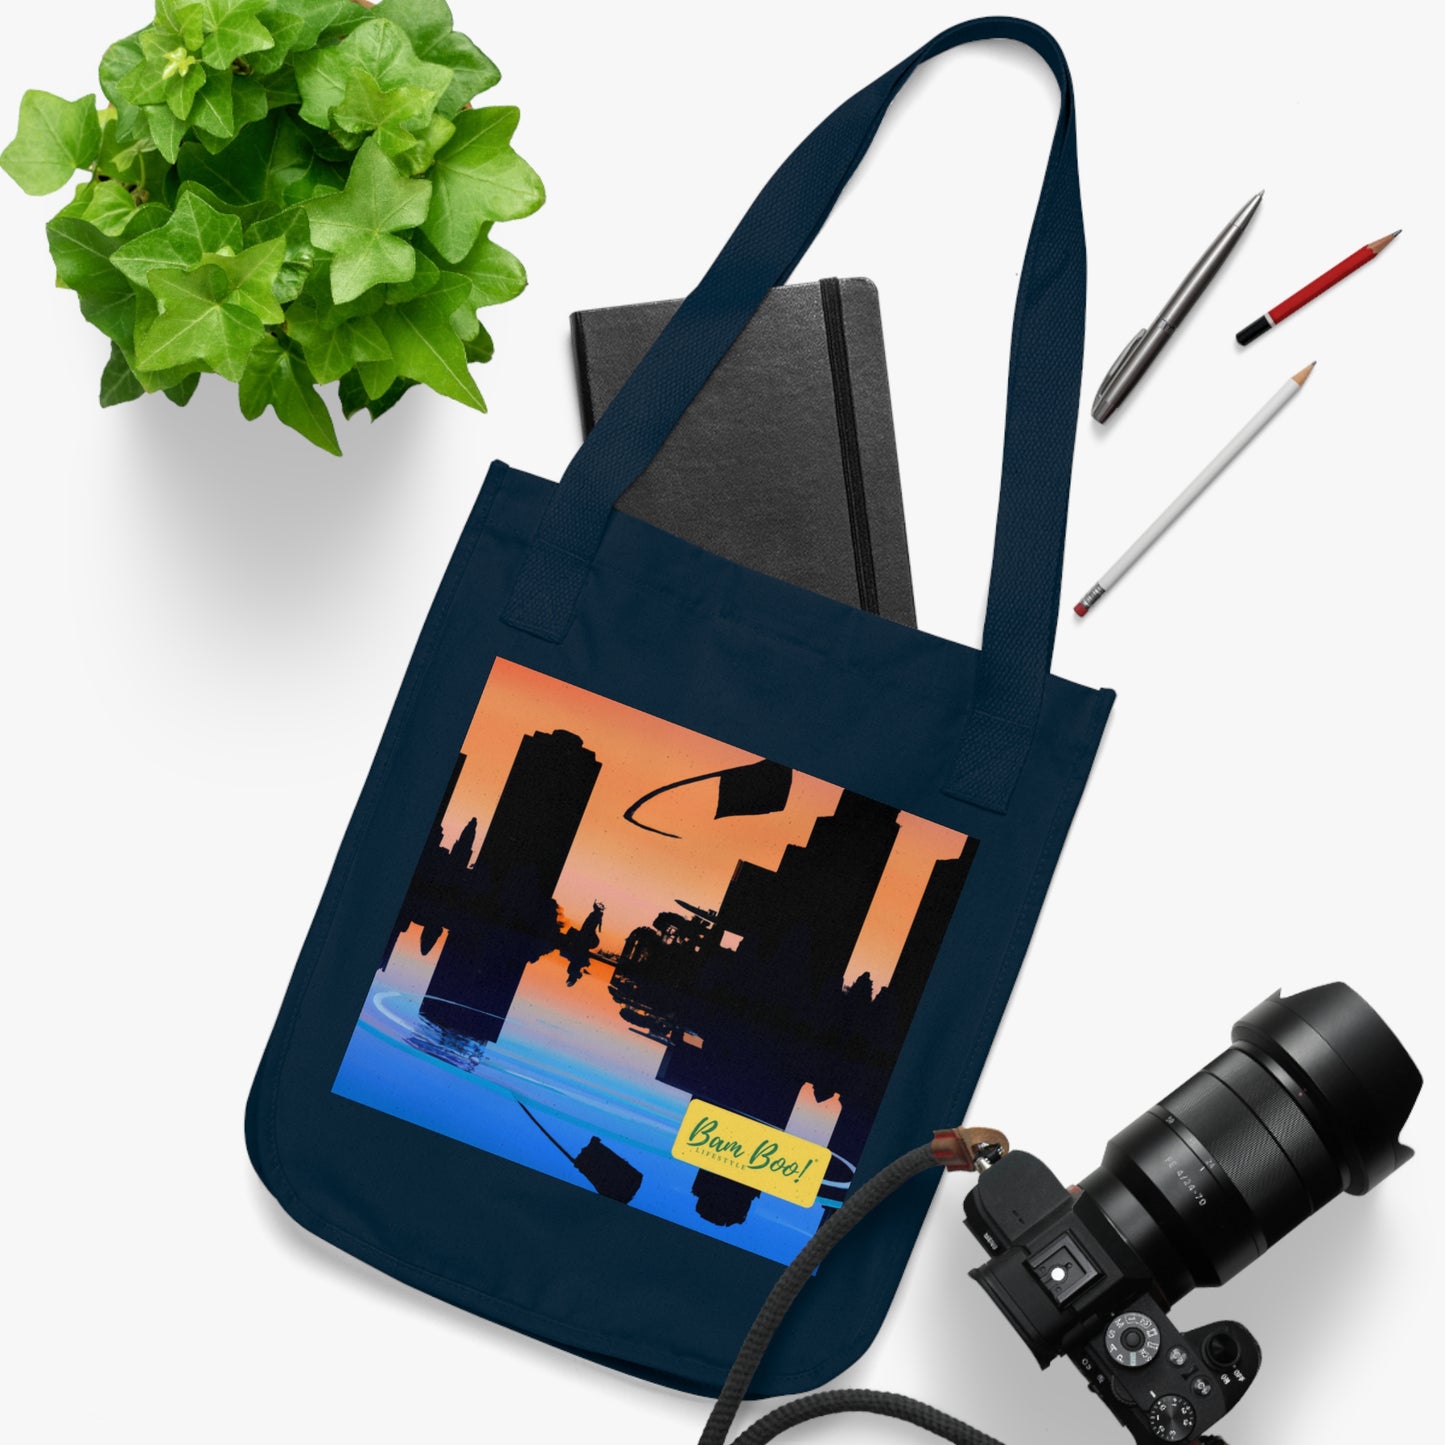 "Cityscape in Technicolor" - Bam Boo! Lifestyle Eco-friendly Tote Bag